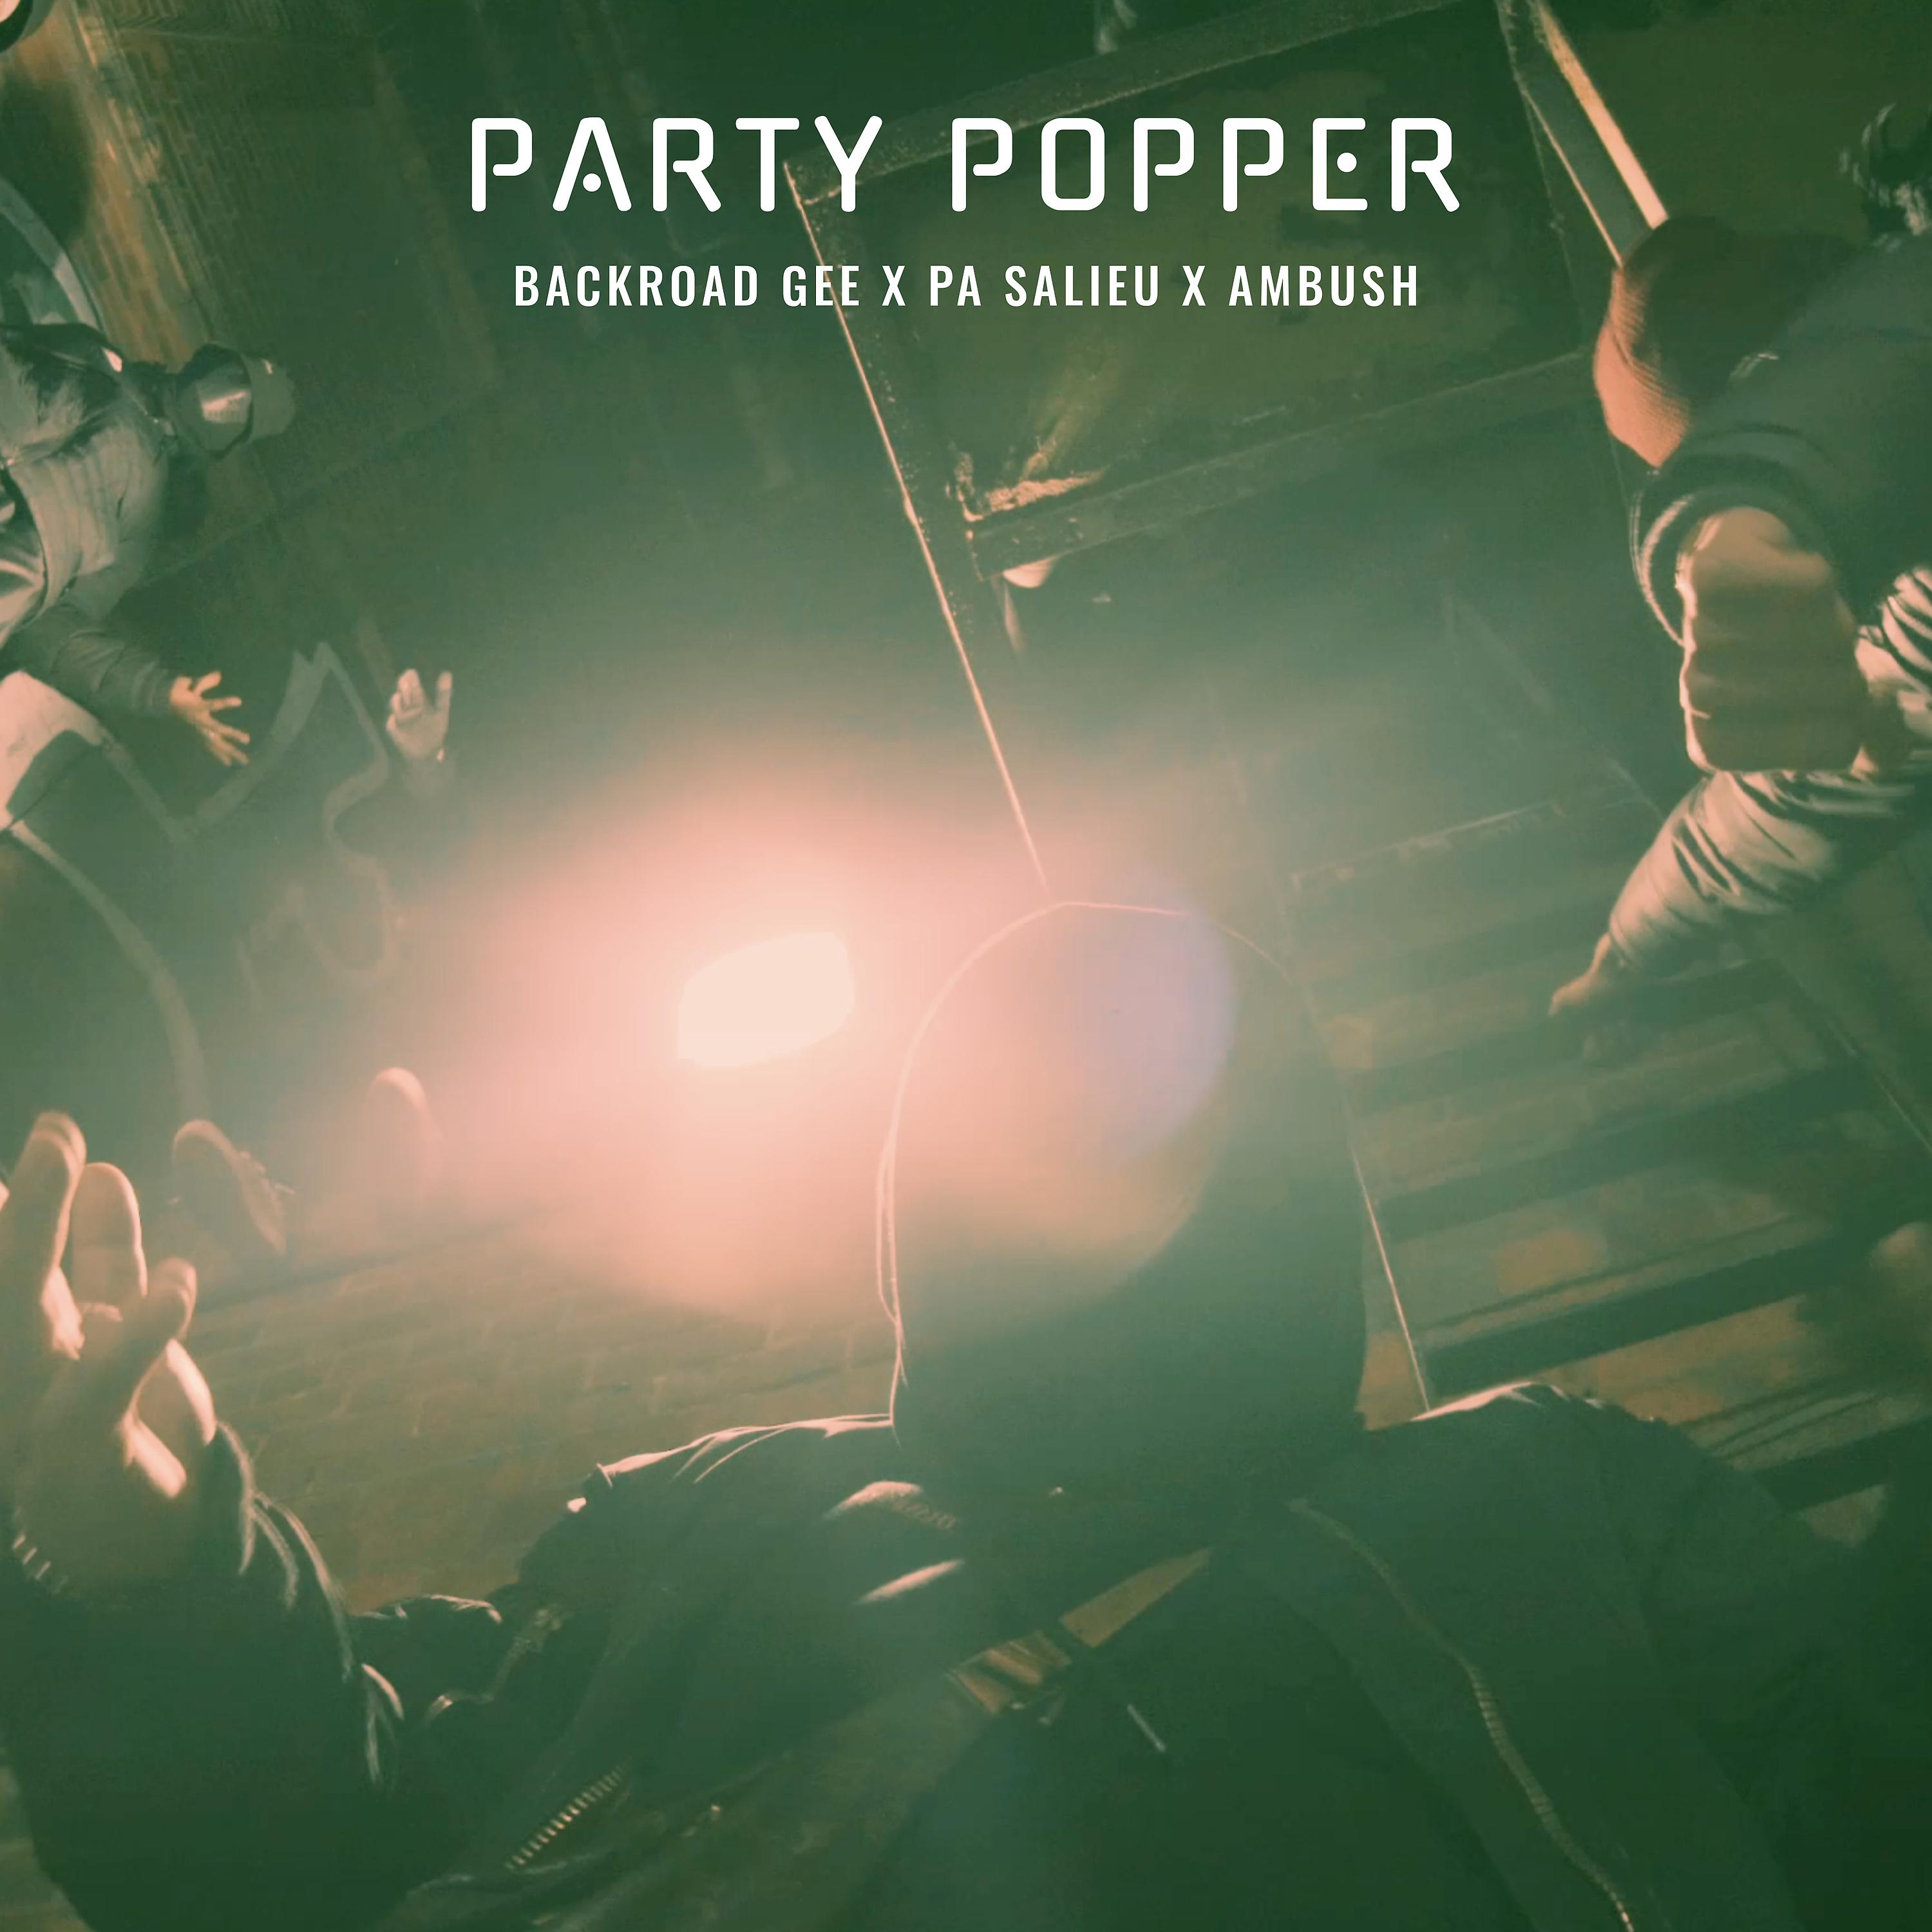 Ambush Buzzworl, Pa Salieu, BackRoad Gee - Party Popper (Remix)